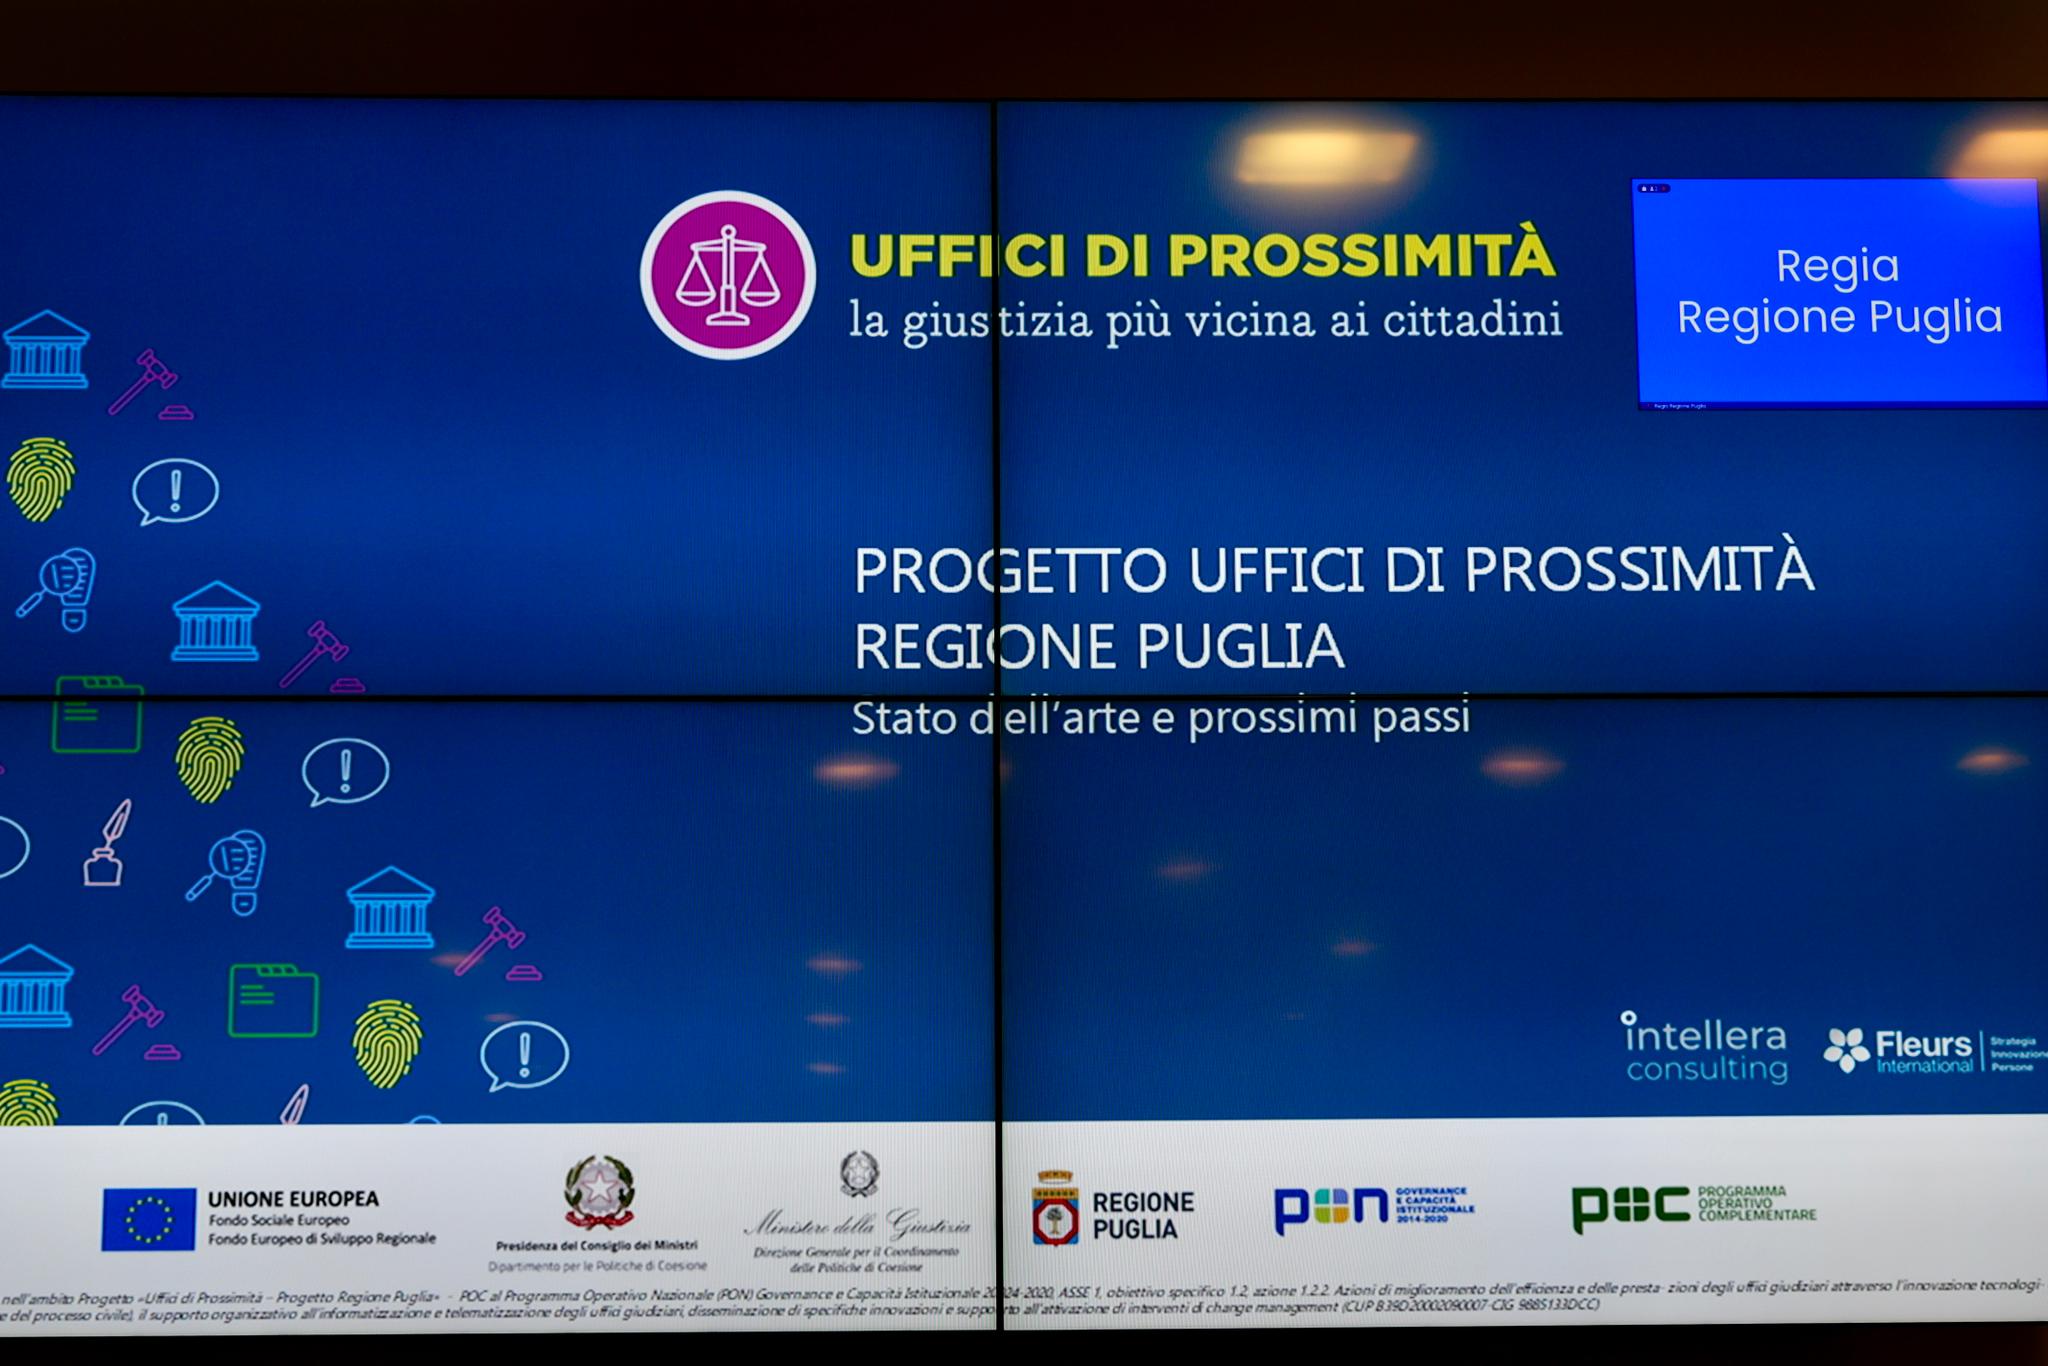 Galleria Il Progetto Uffici di Prossimità in Puglia: un passo concreto verso una giustizia più equa e accessibile - Diapositiva 4 di 4